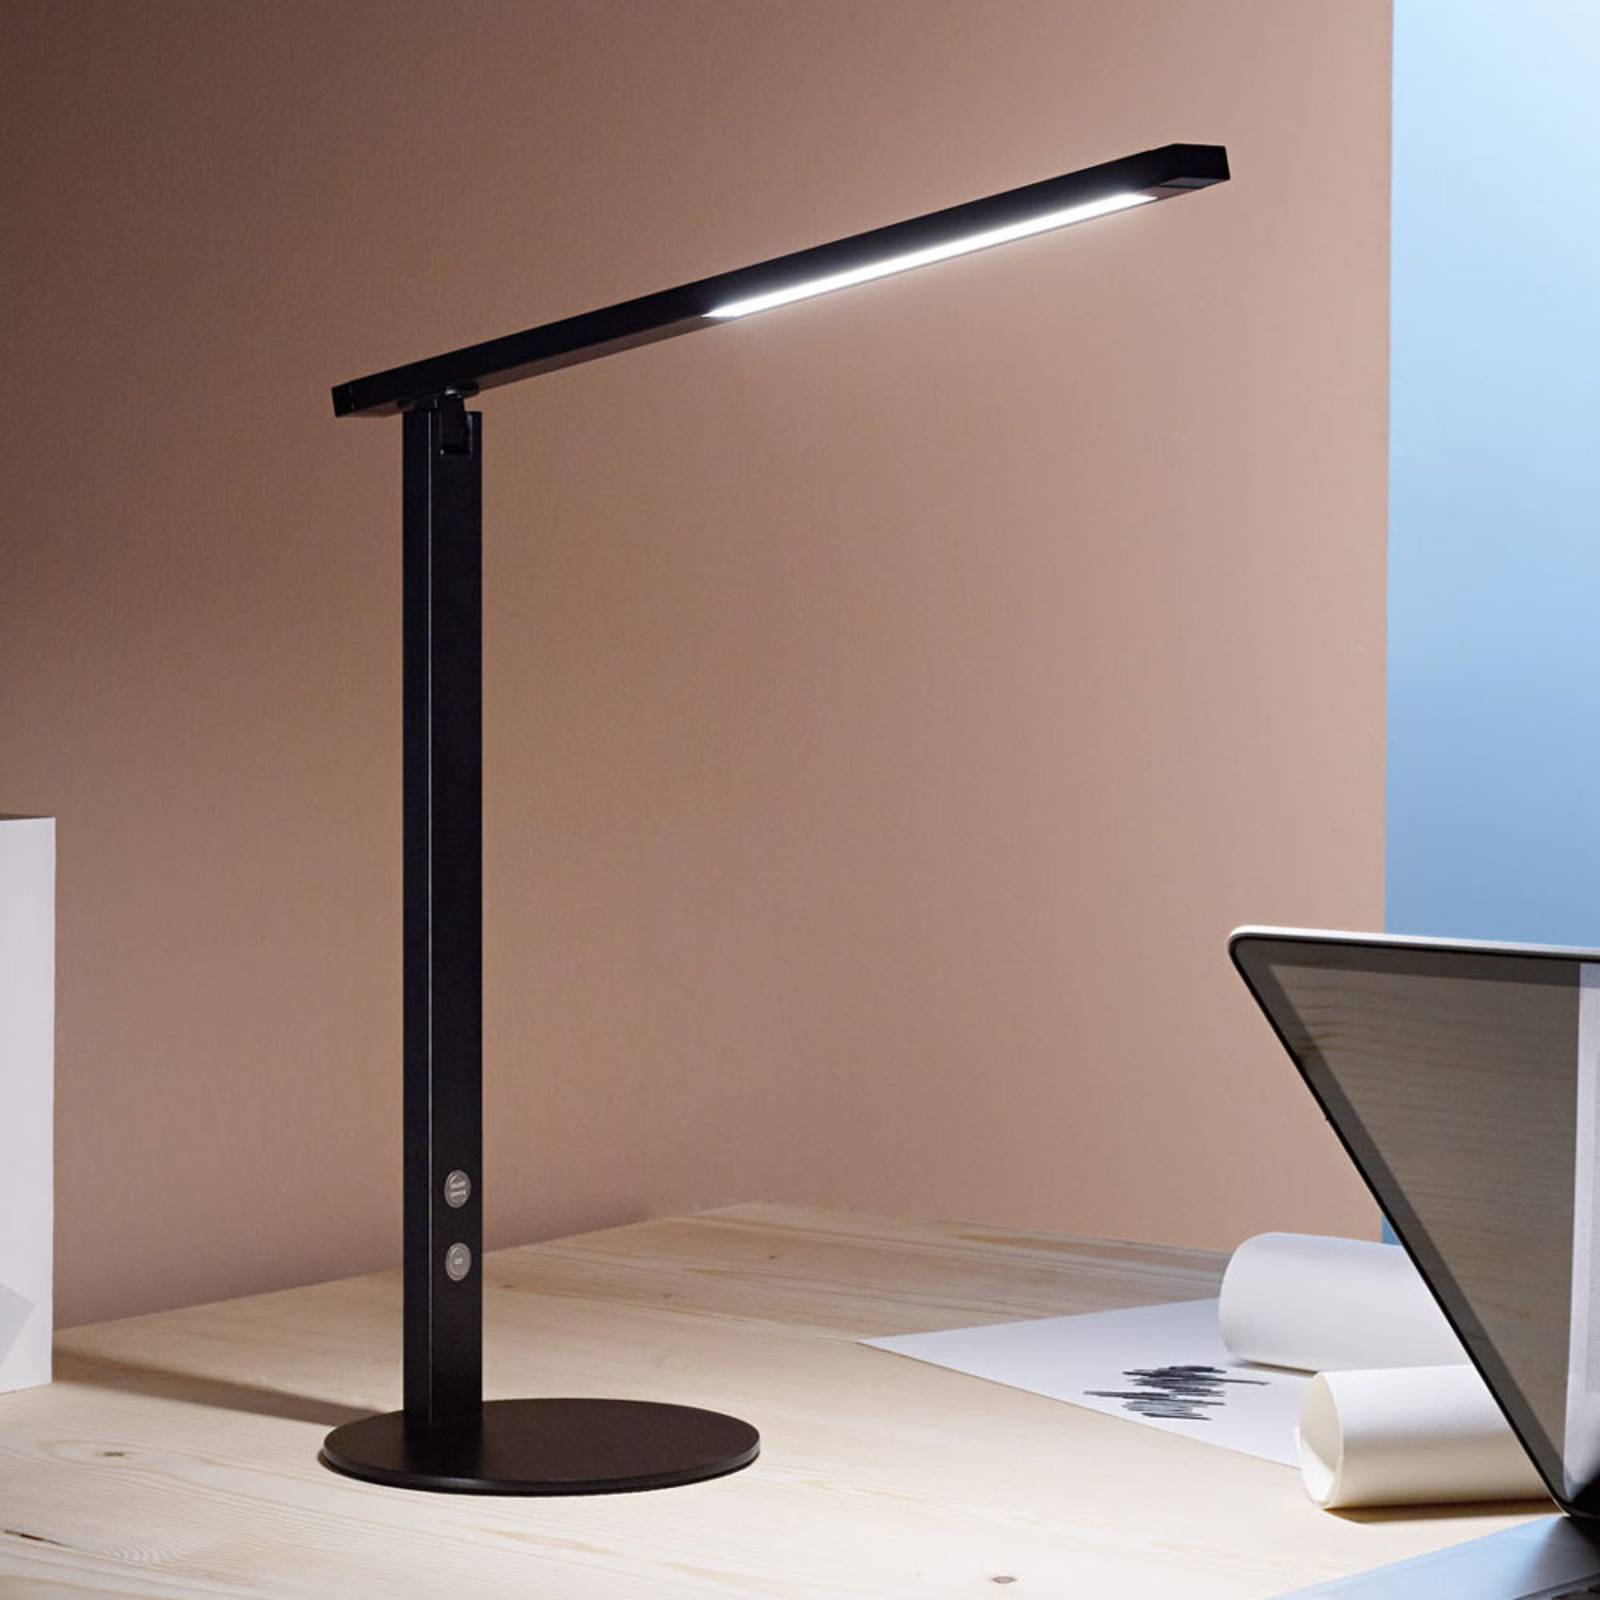 Lampe de bureau LED Ideal avec variateur, noire